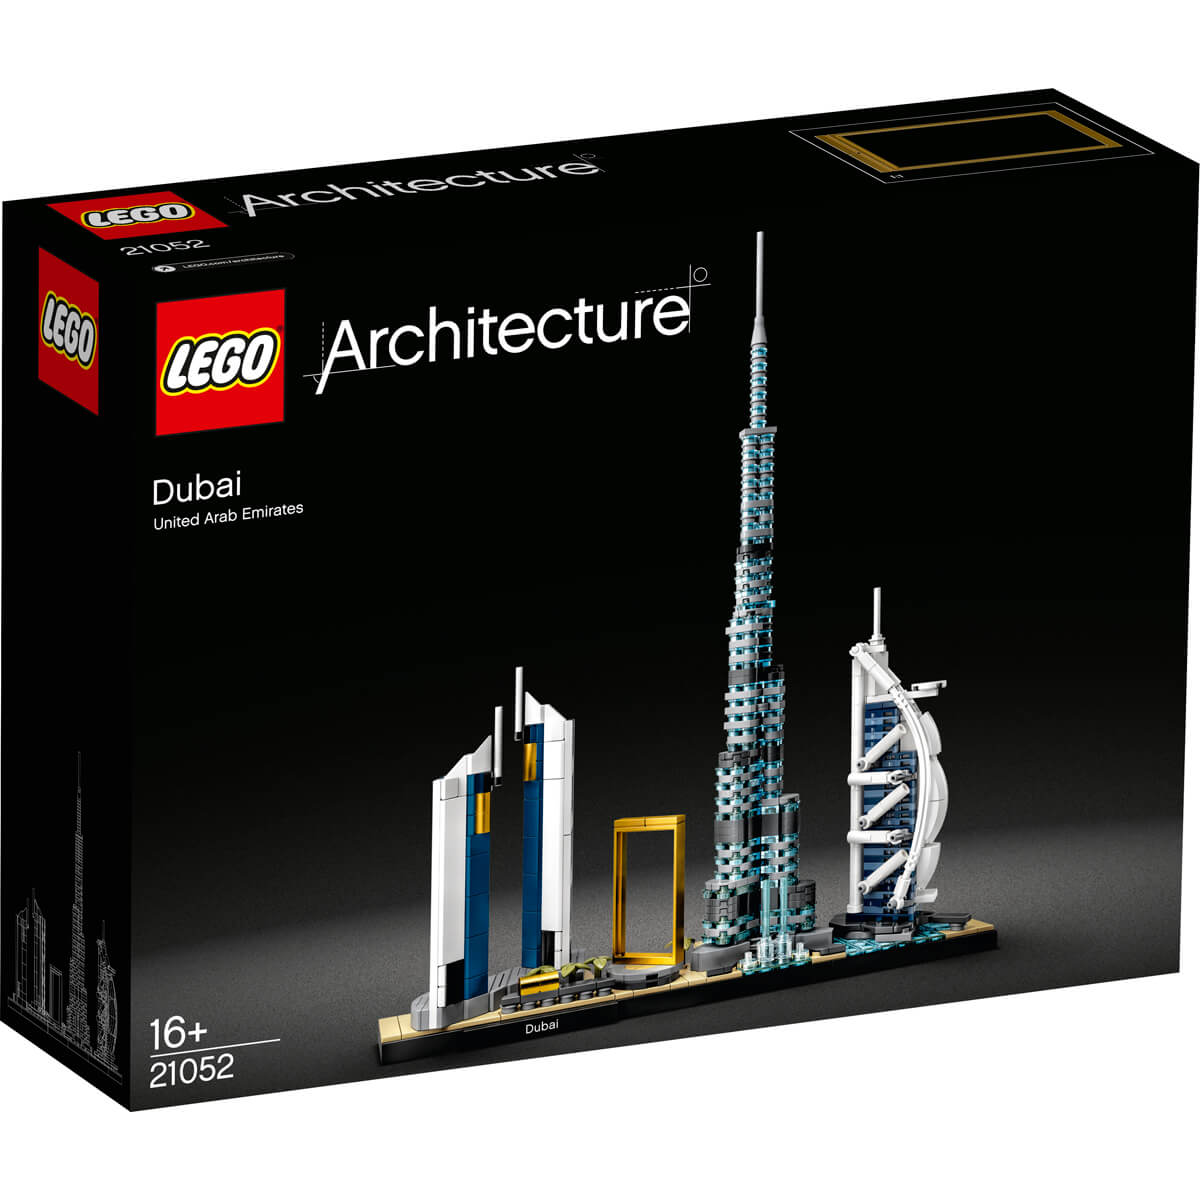 ΠΑΙΔΙ | Παιχνίδια | LEGO | CREATOR EXPERT & ART 21052 Dubai